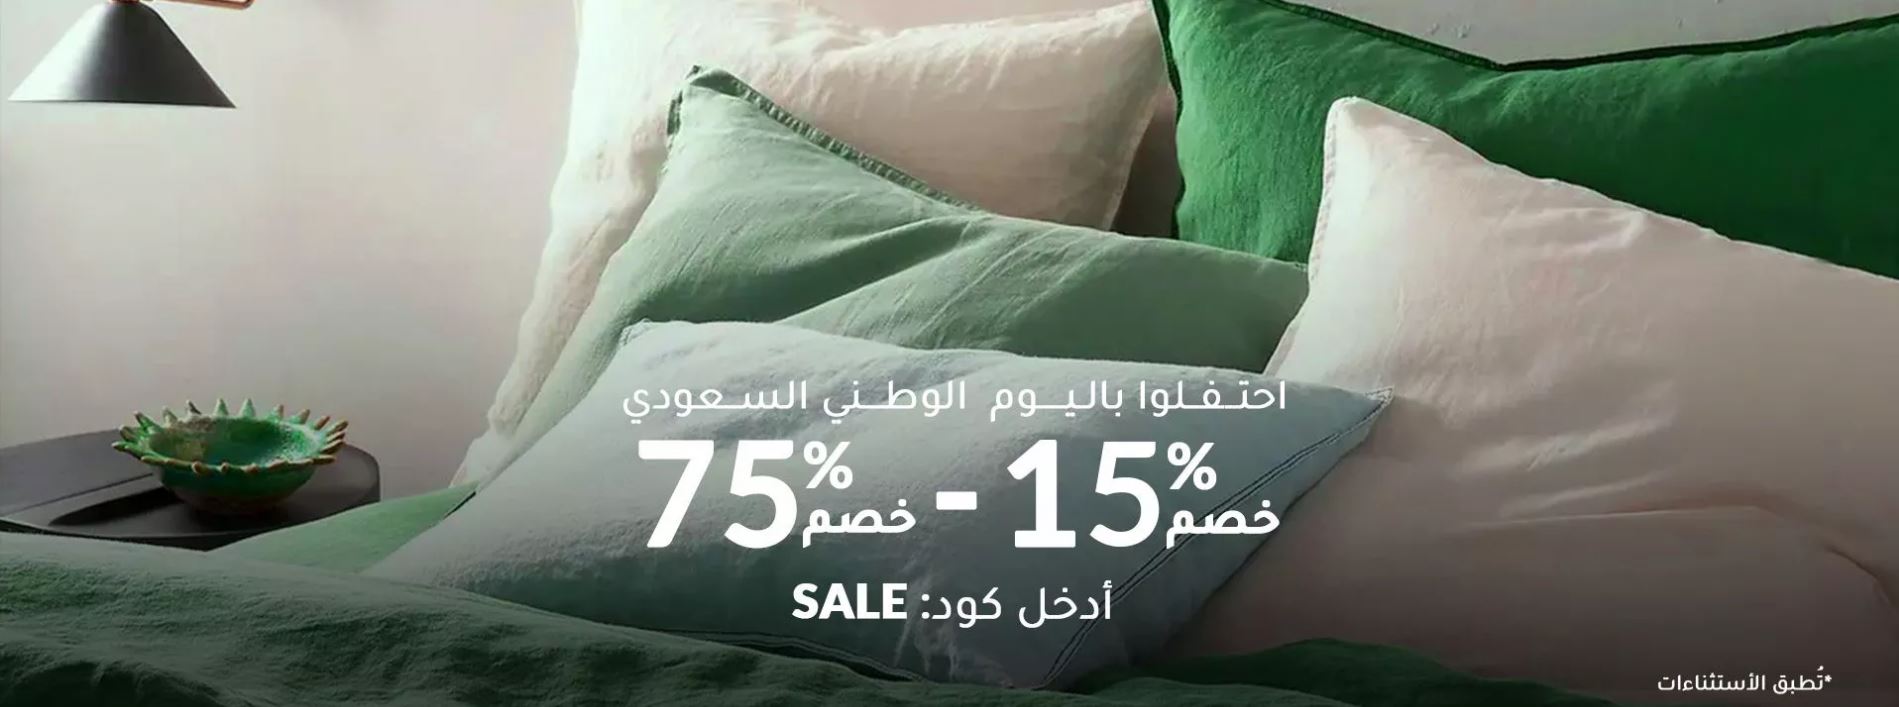 عروضات فوغا كلوسيت لمنتجات المنزل بيوم الوطن السعودي 92